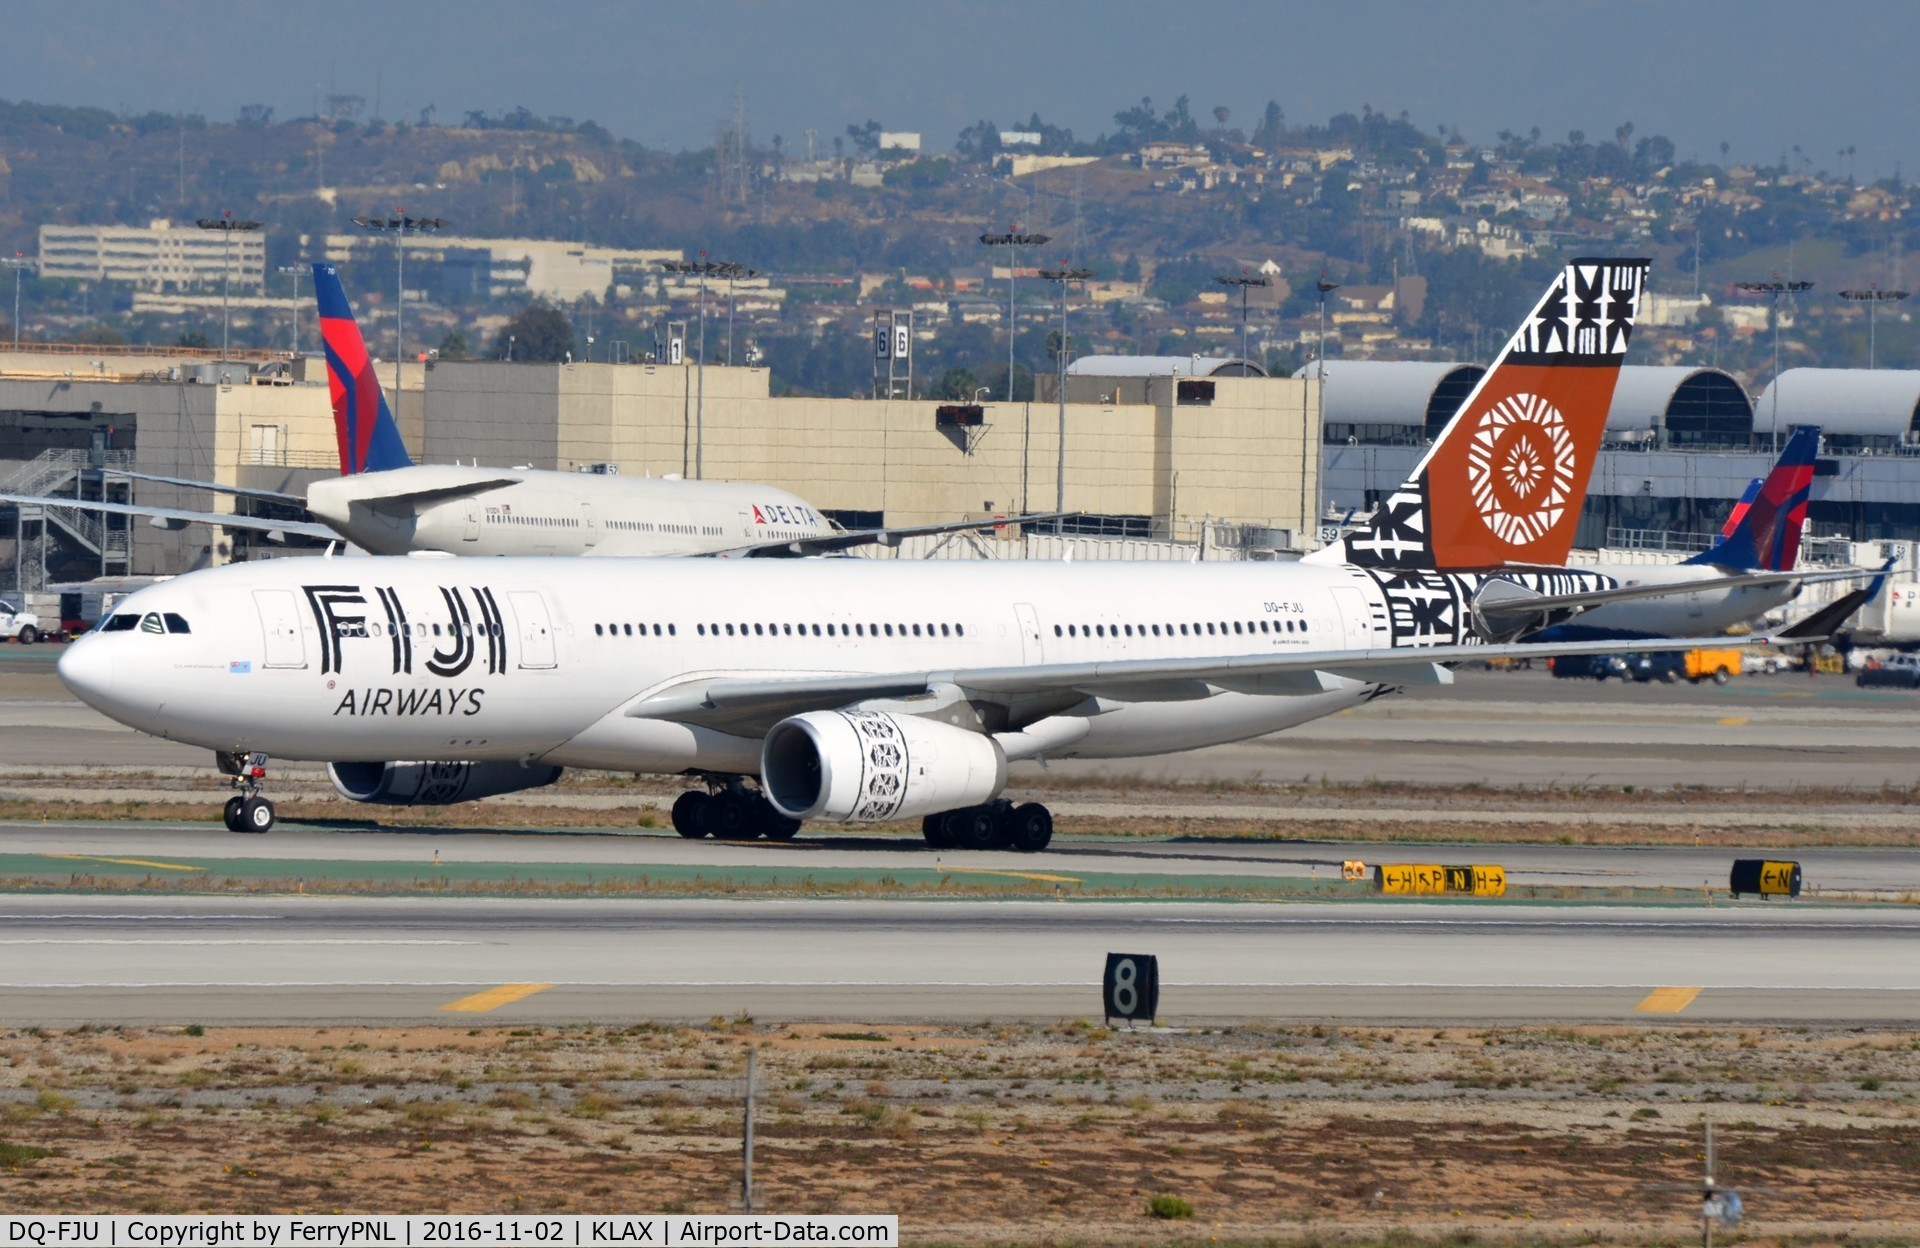 DQ-FJU, 2013 Airbus A330-243 C/N 1416, Fiji Air A332 arrived in LAX